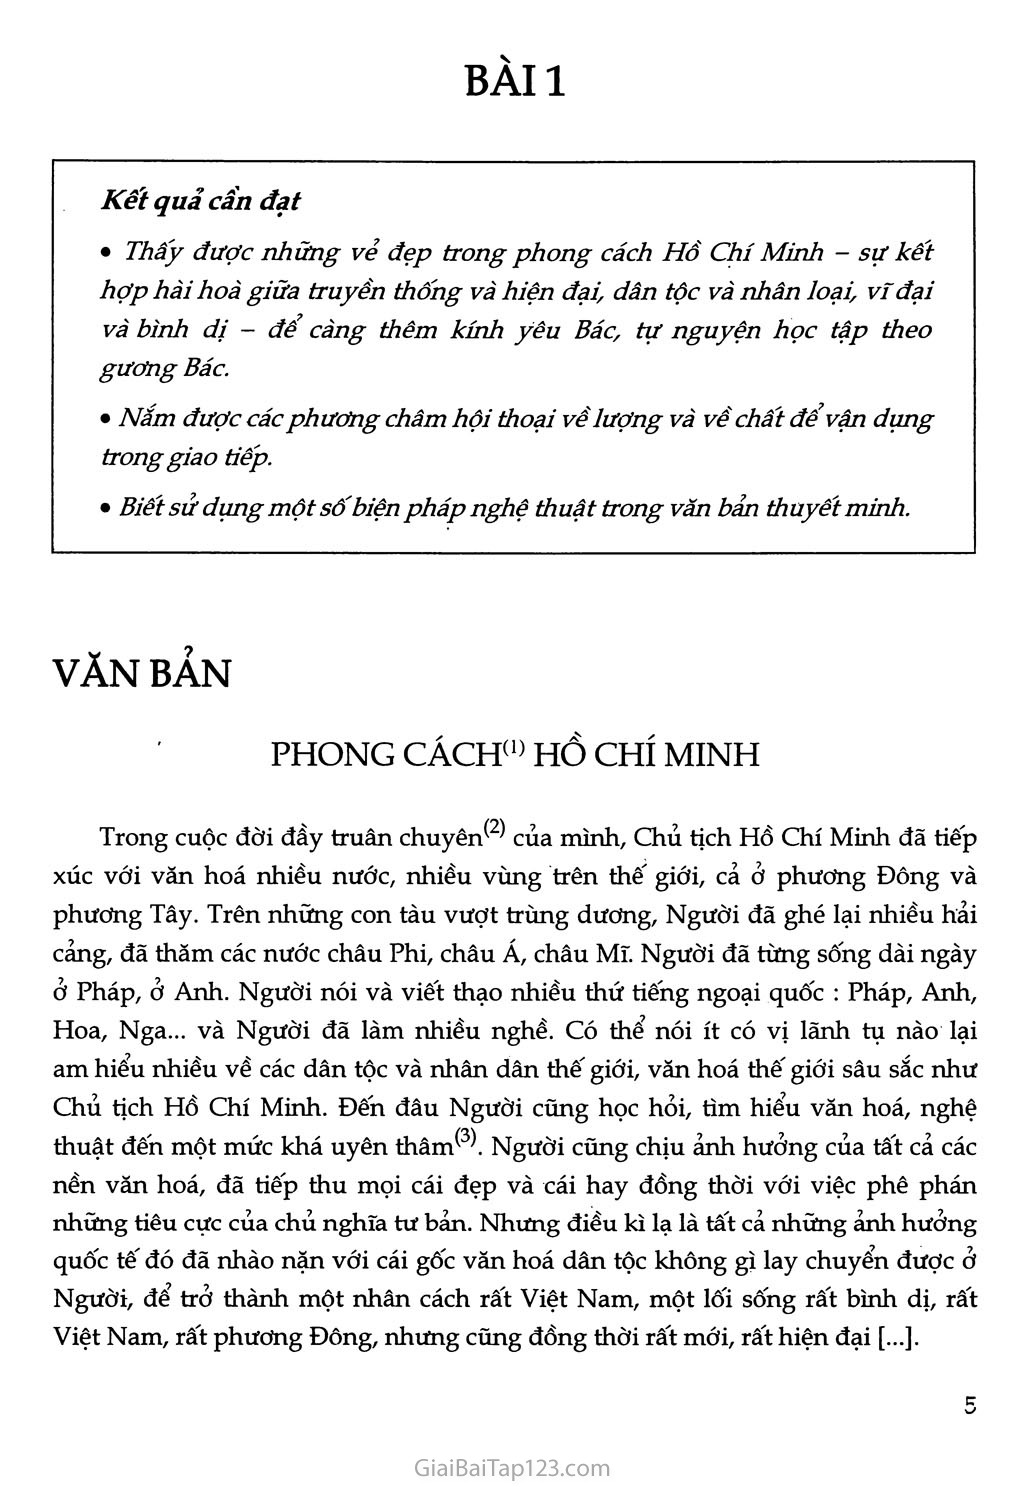 Phong cách Hồ Chí Minh trang 1